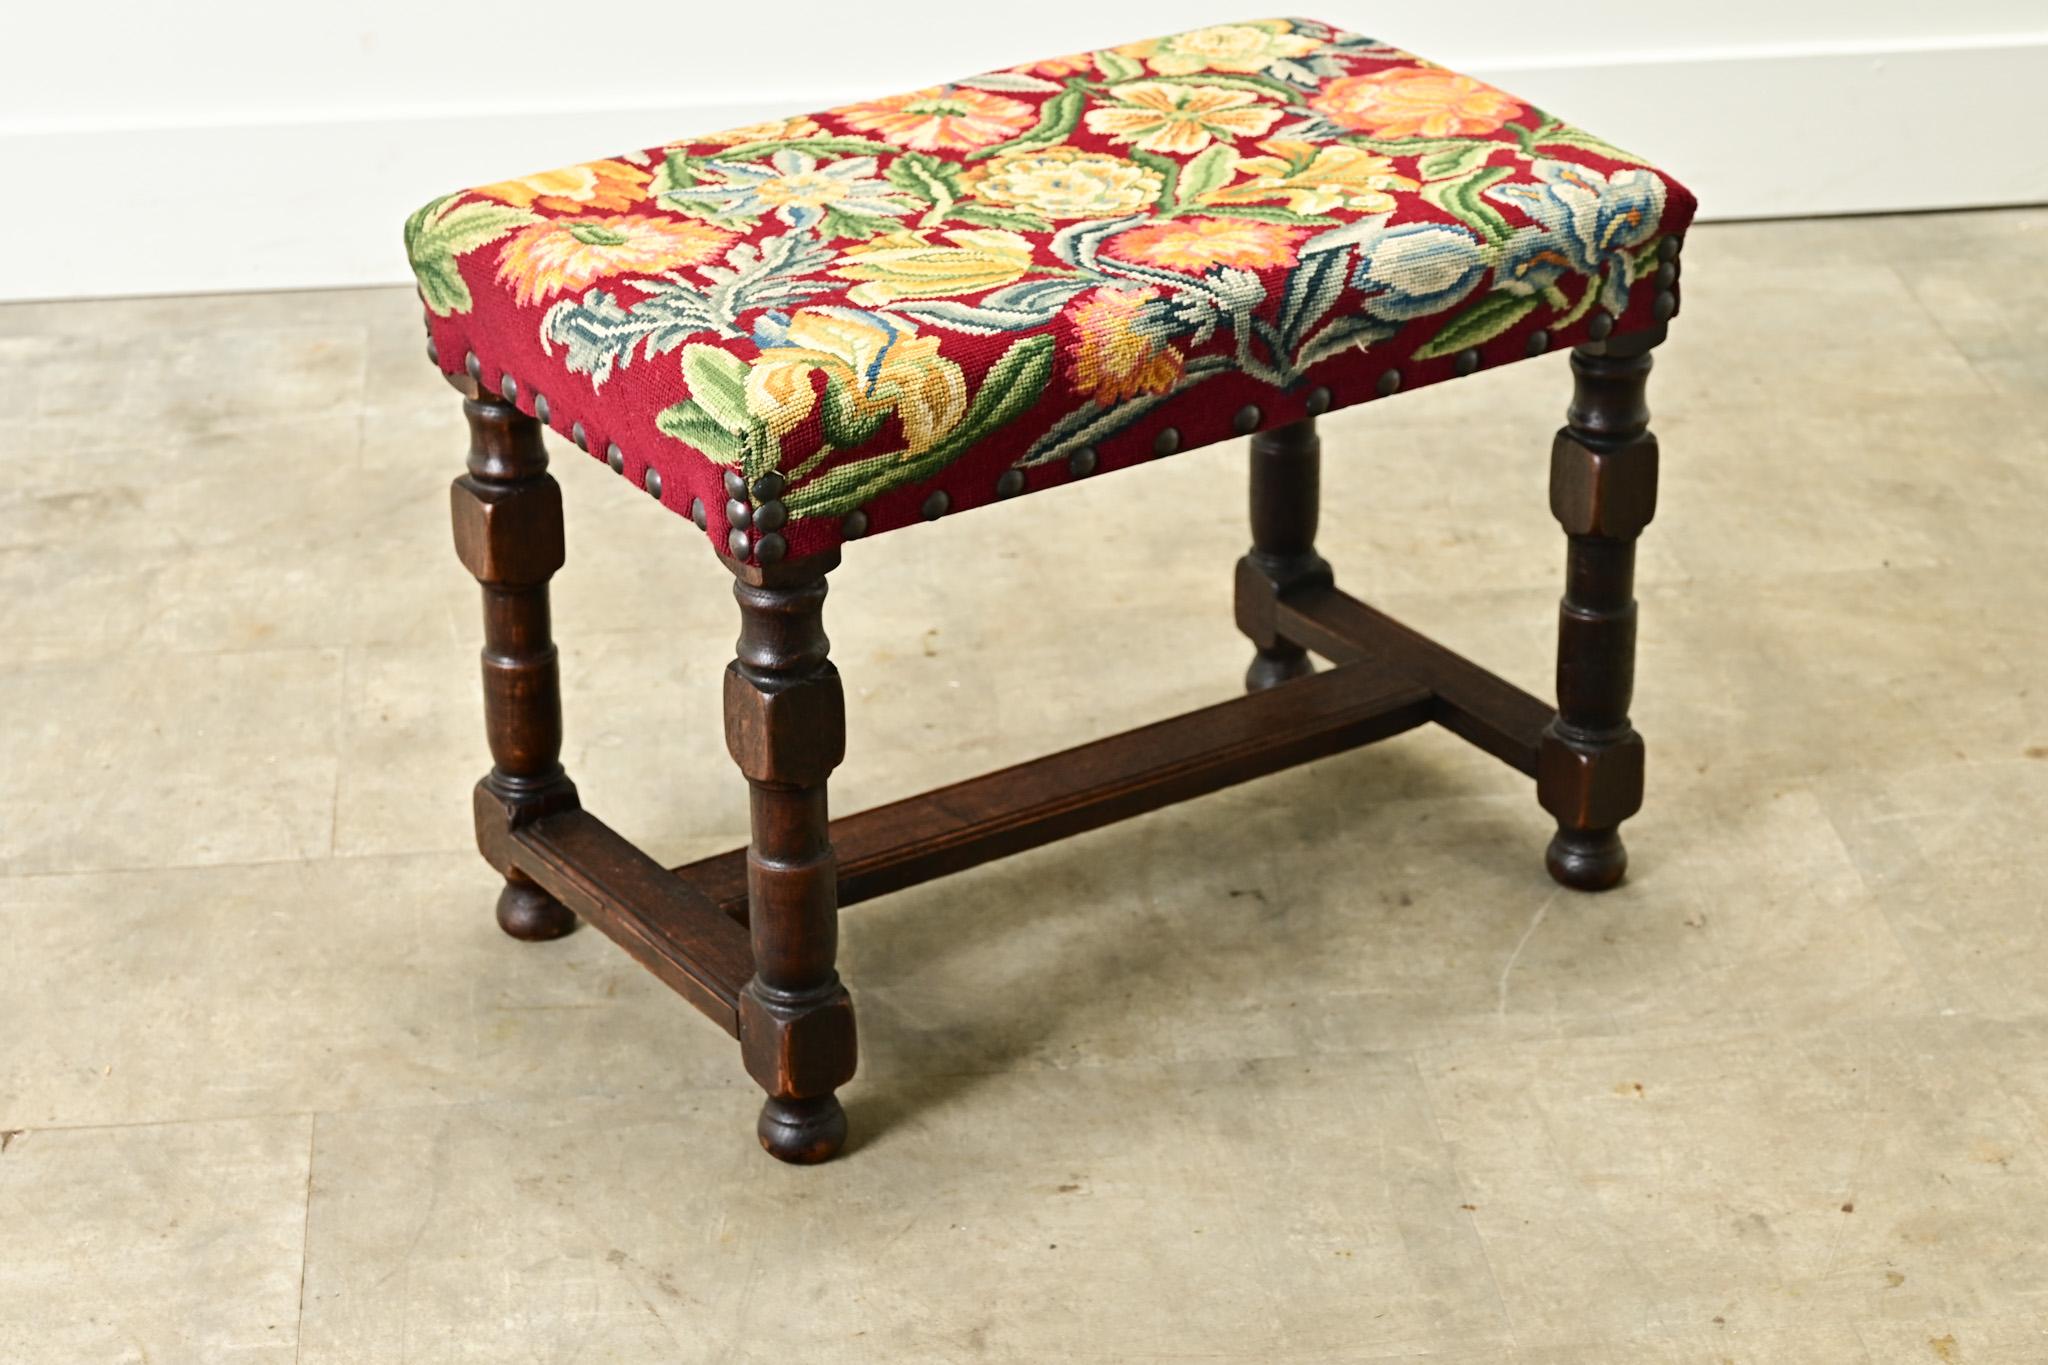 Tabouret en chêne français et tapisserie fabriqué dans les années 1800. Ce tabouret confortable est recouvert d'une tapisserie florale à l'aiguille, lumineuse et colorée, et d'une garniture en tête de clou. Elle repose sur des pieds tournés en chêne